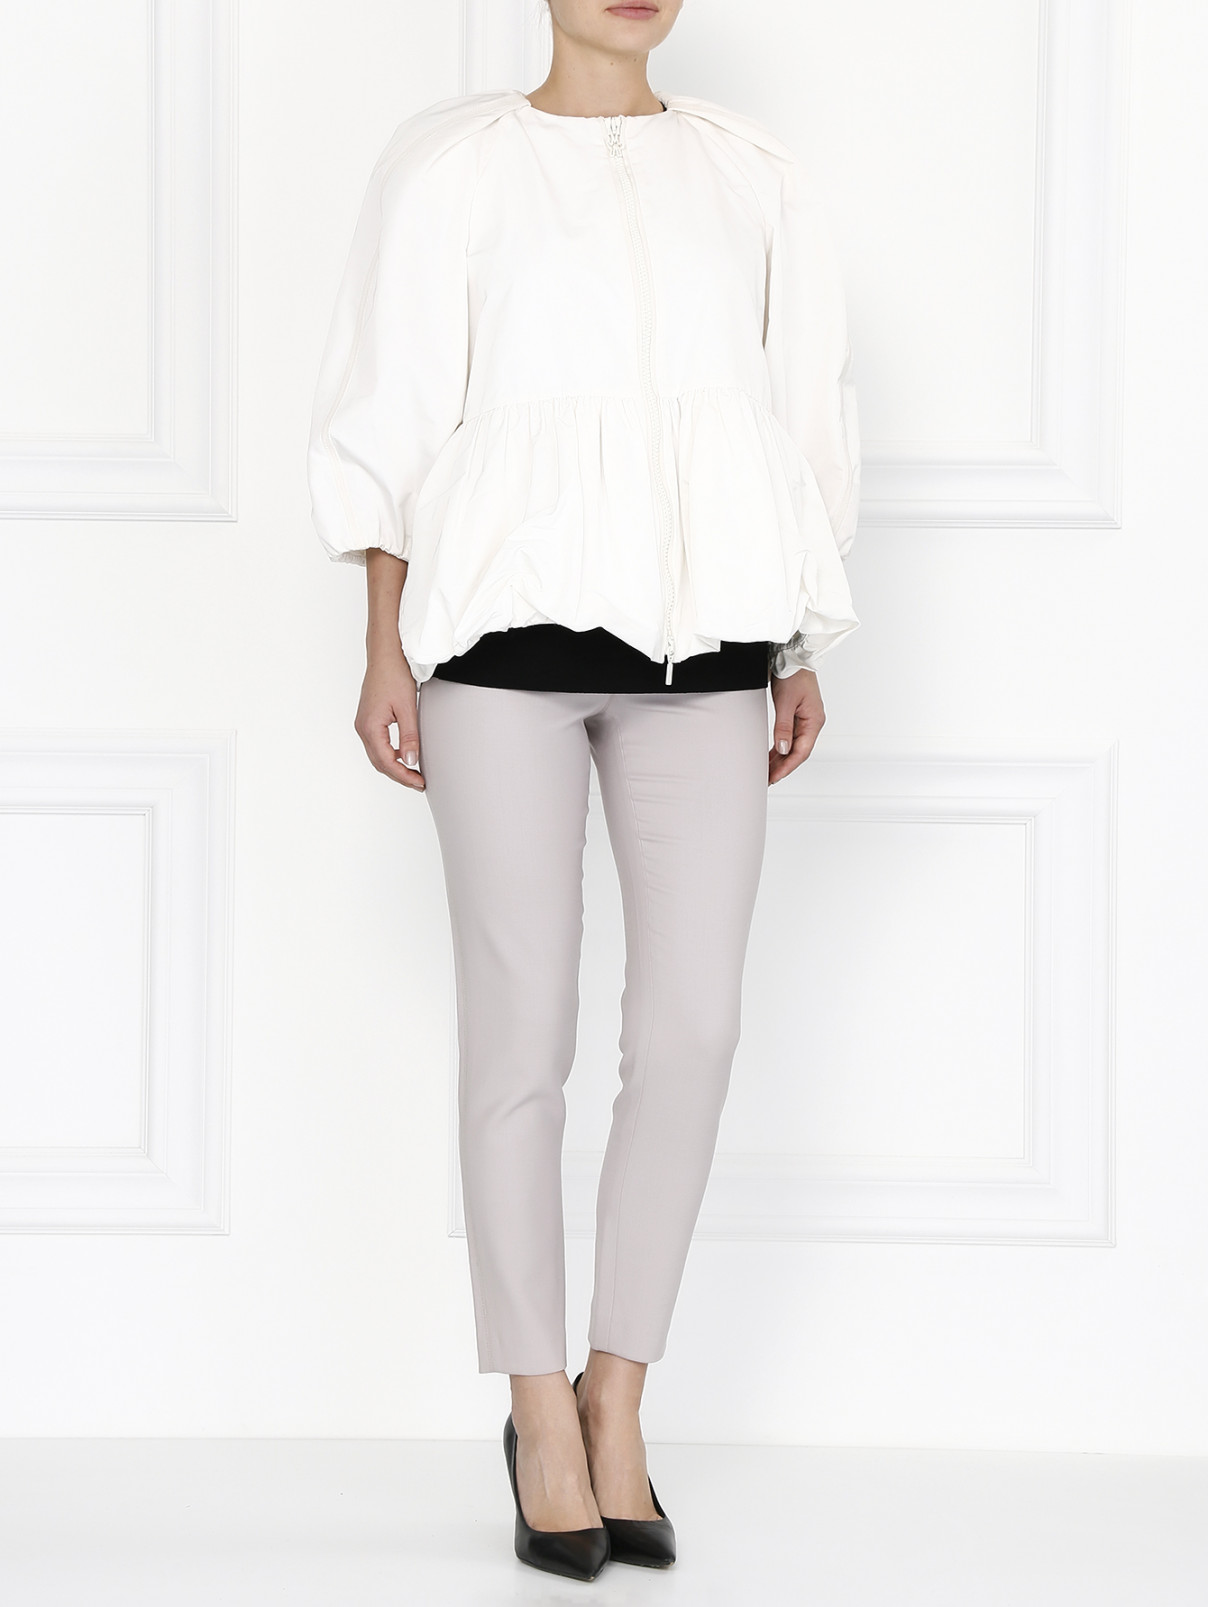 Куртка на молнии Moncler  –  Модель Общий вид  – Цвет:  Белый